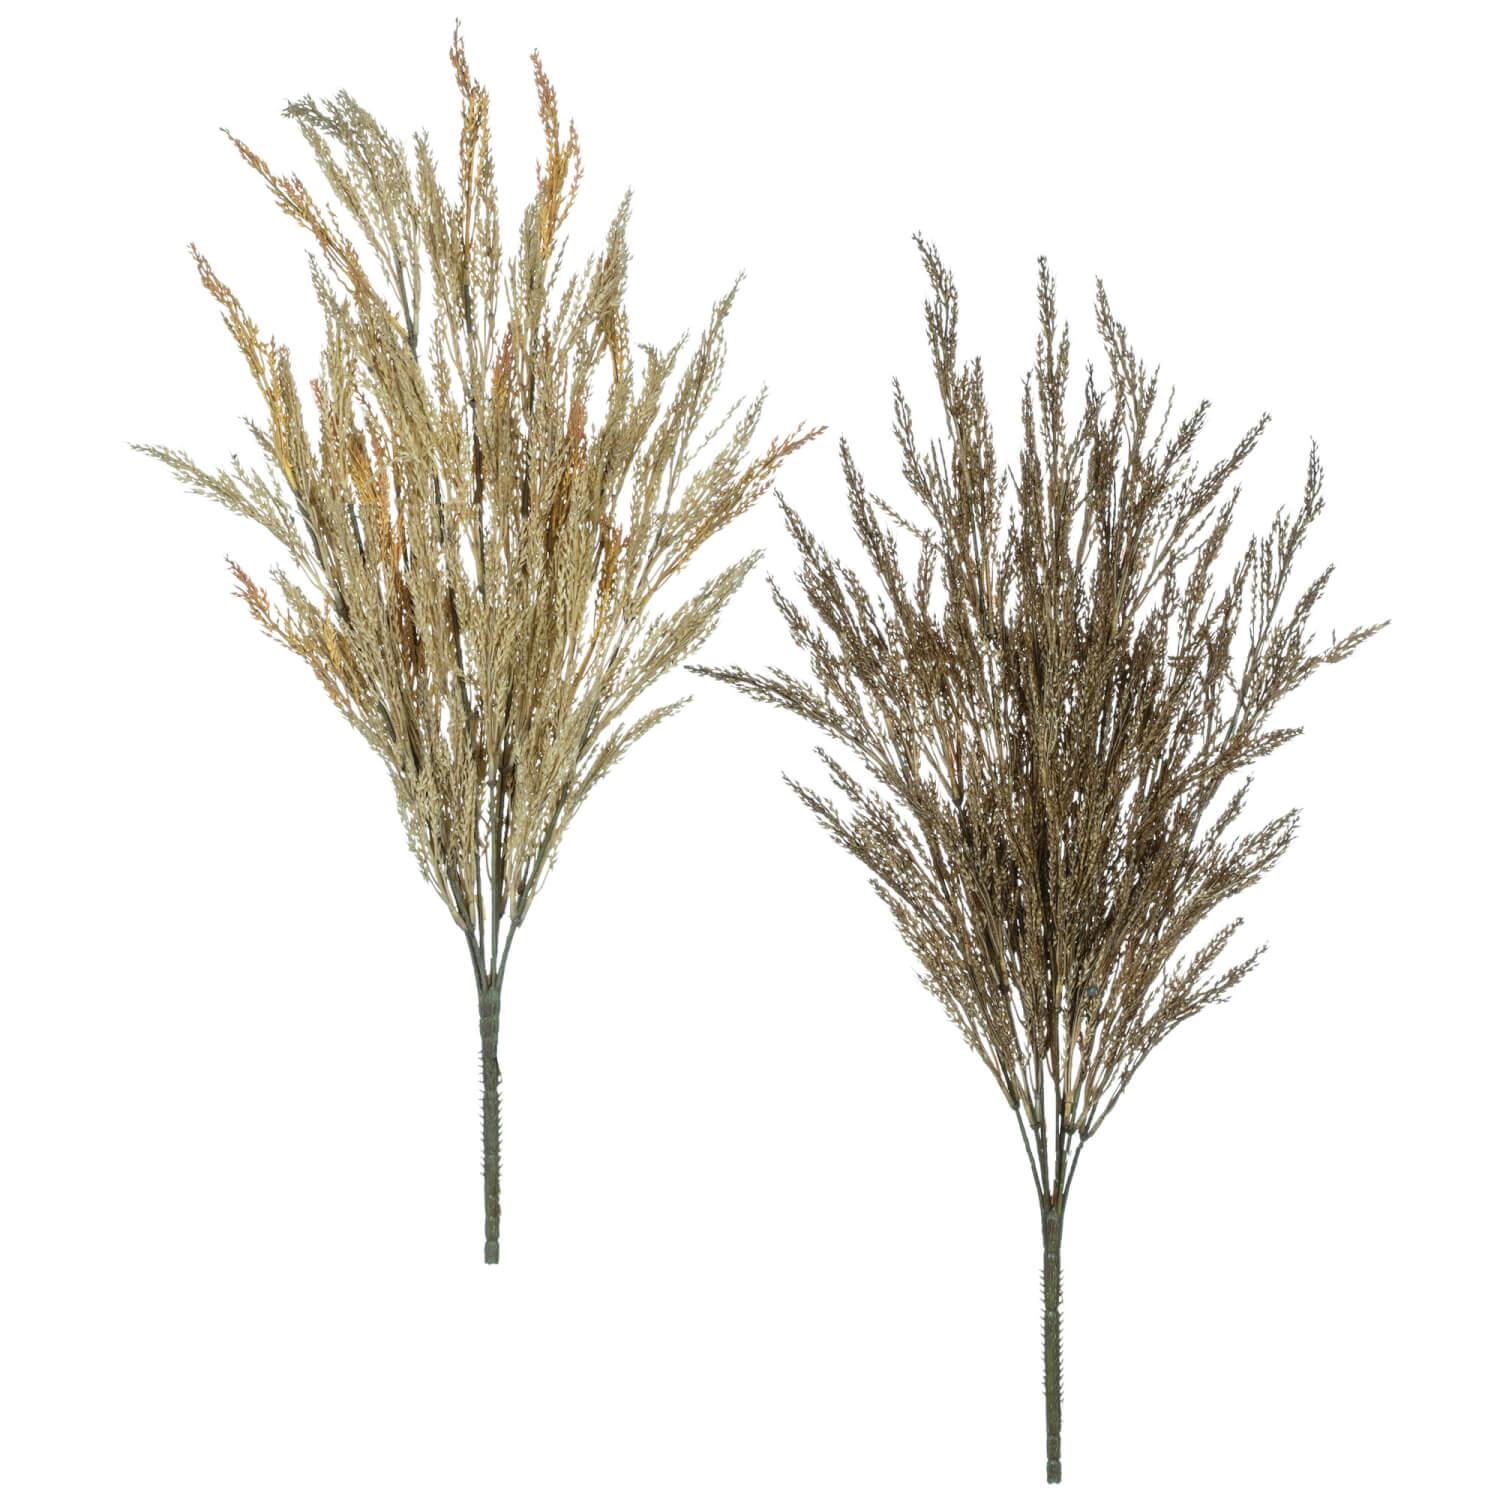 Wheat Grass (2 pc.) - Matuska Taxidermy Supply Company